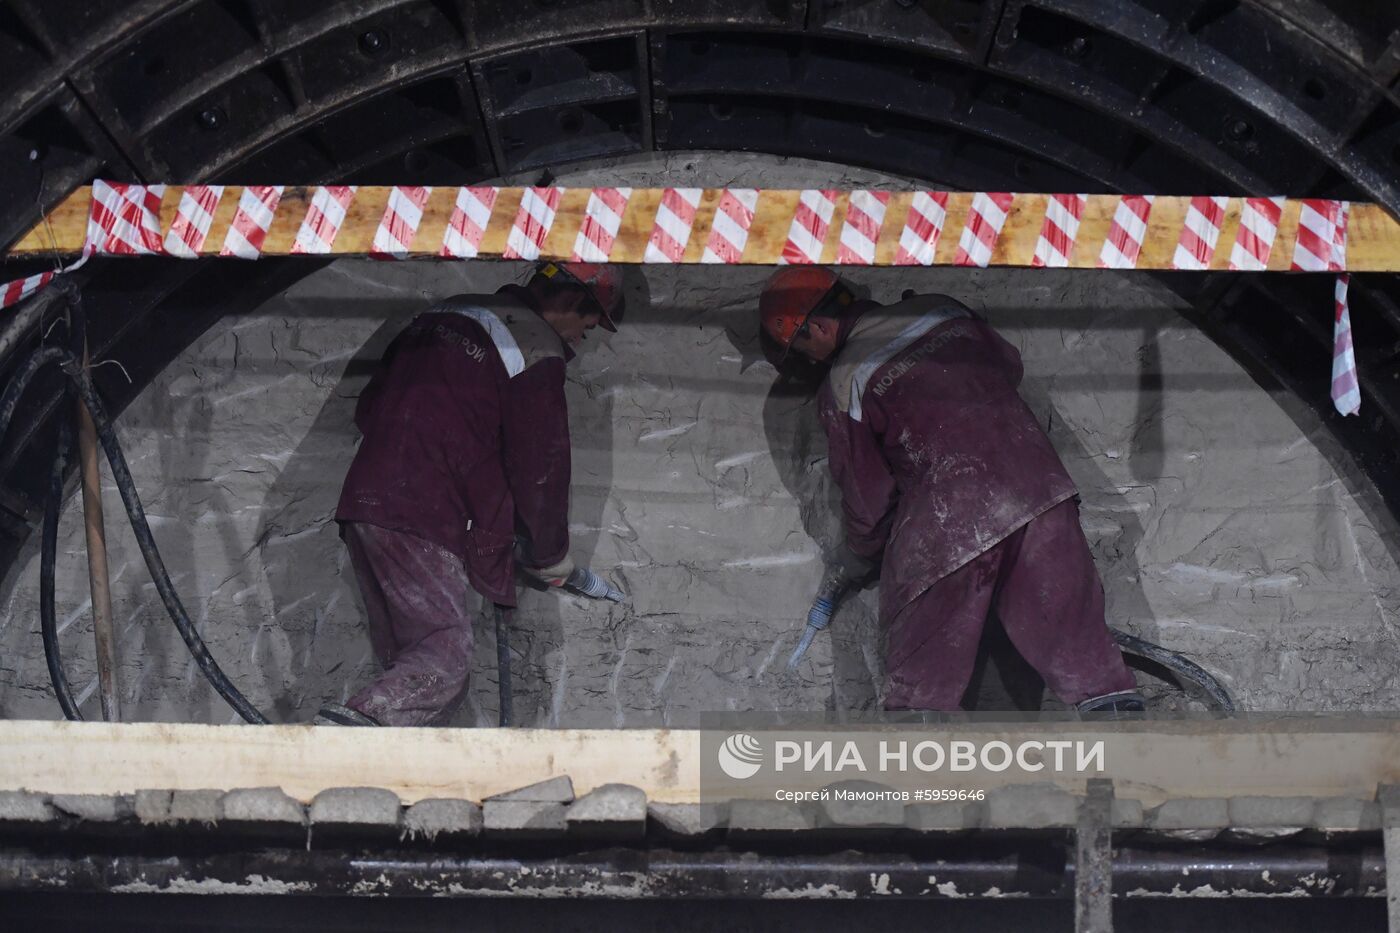 Строительство станции метро "Шереметьевская"